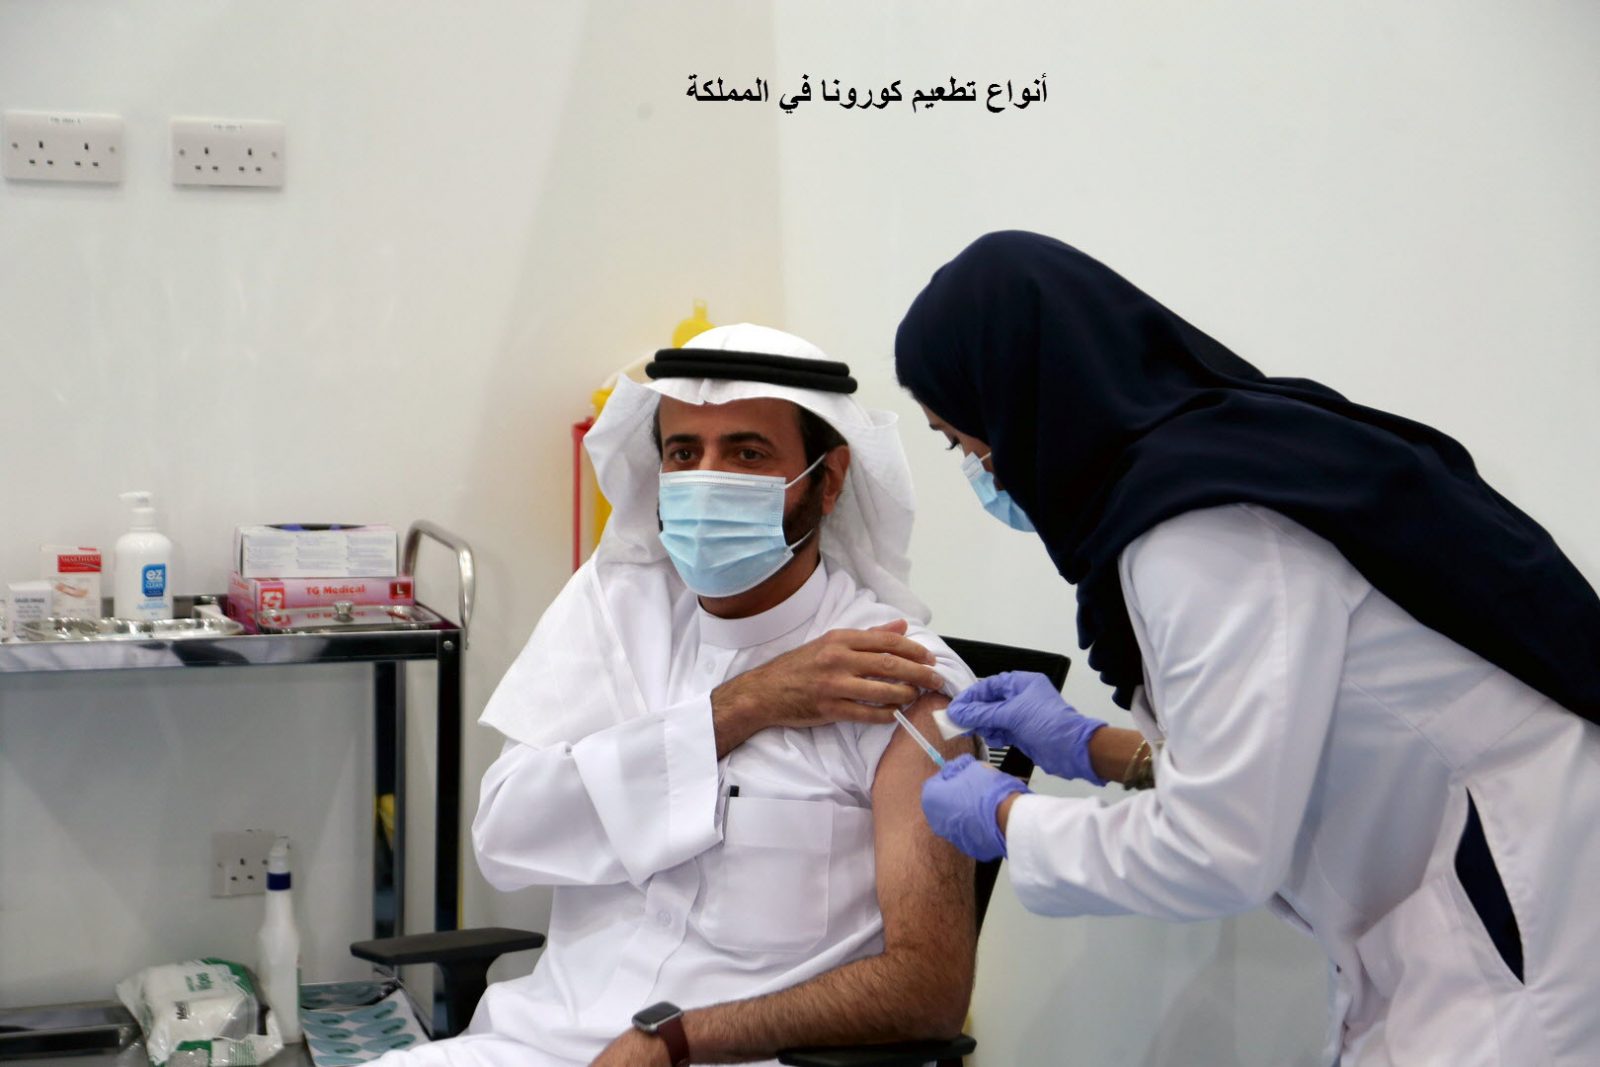 ما هي أنواع تطعيم كورونا في المملكة العربية السعودية ؟